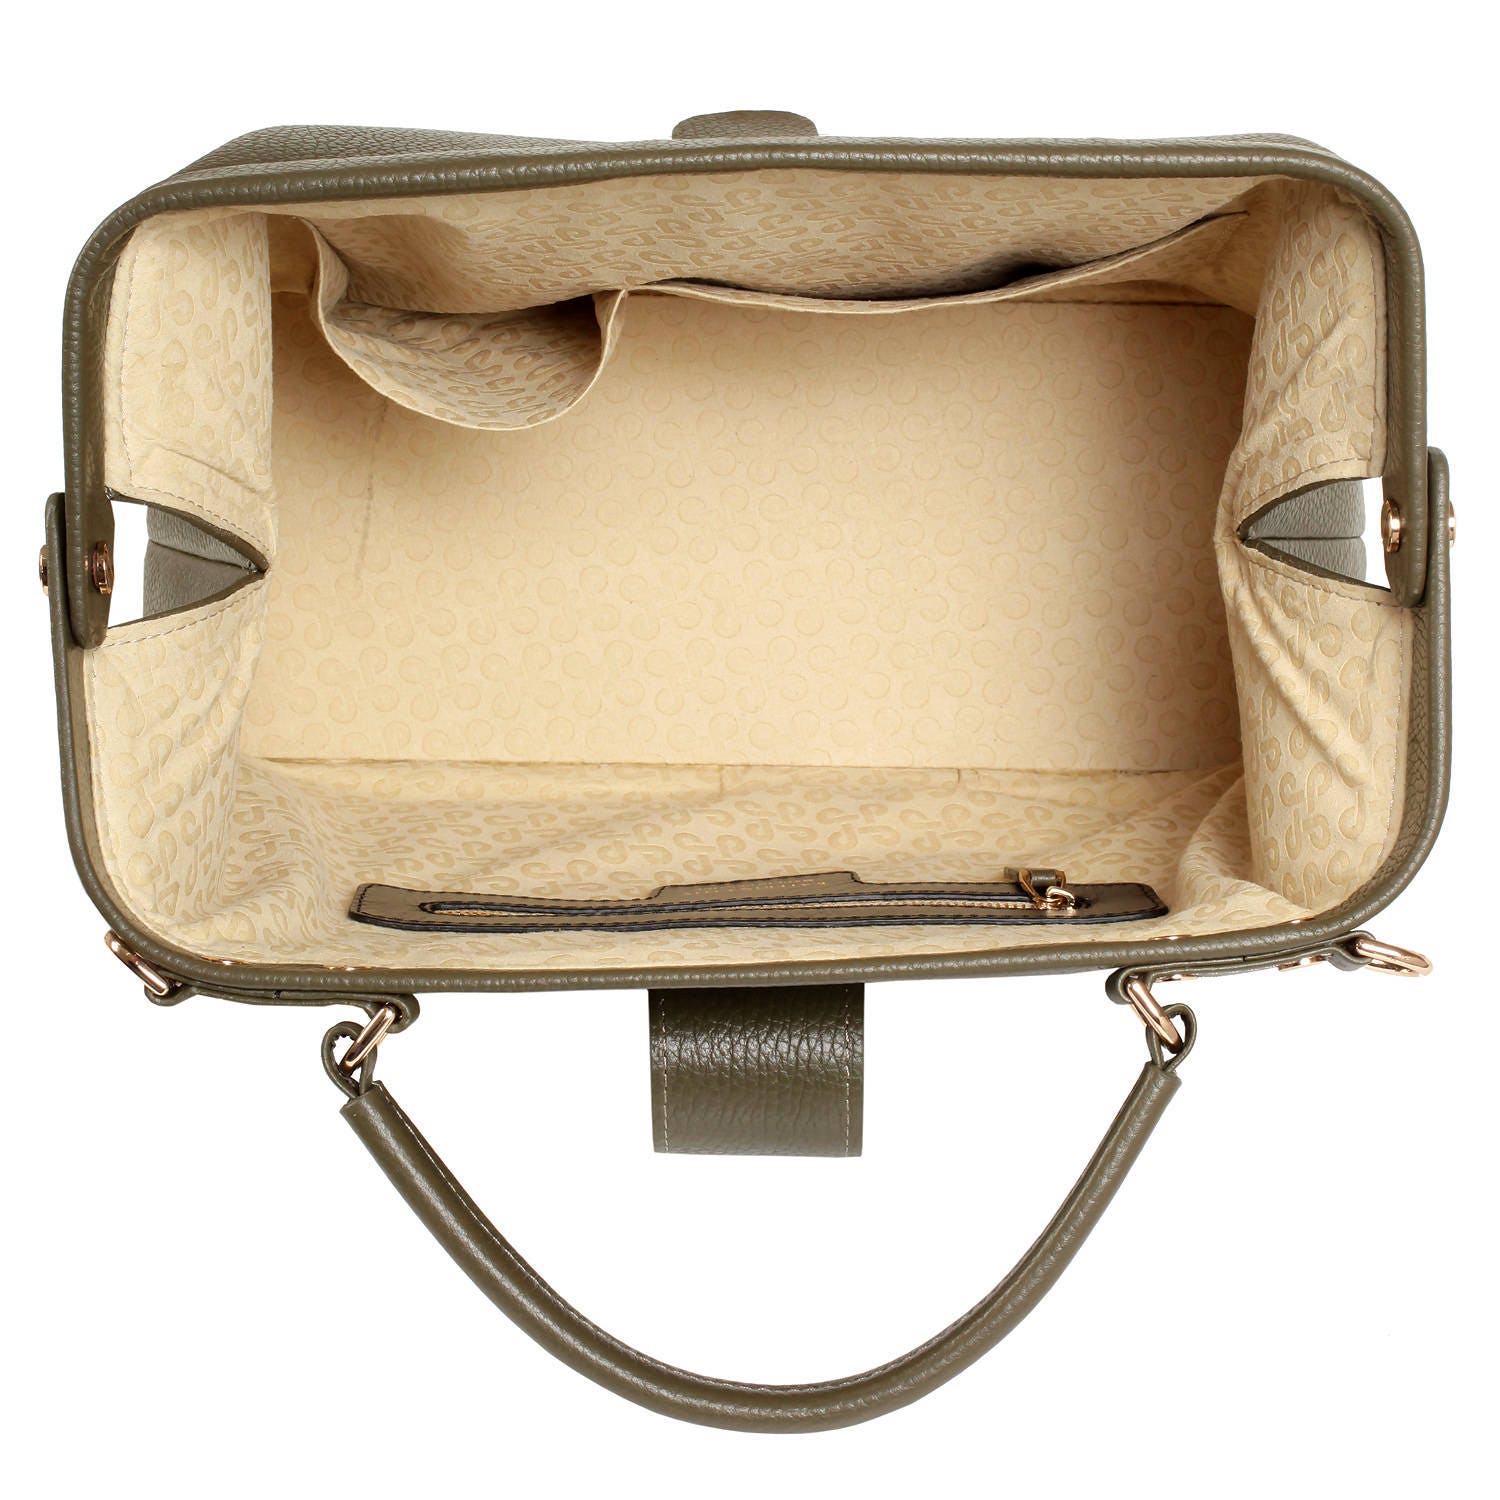 Leather doctor bag for women Olive Leather Handbag Top | Etsy